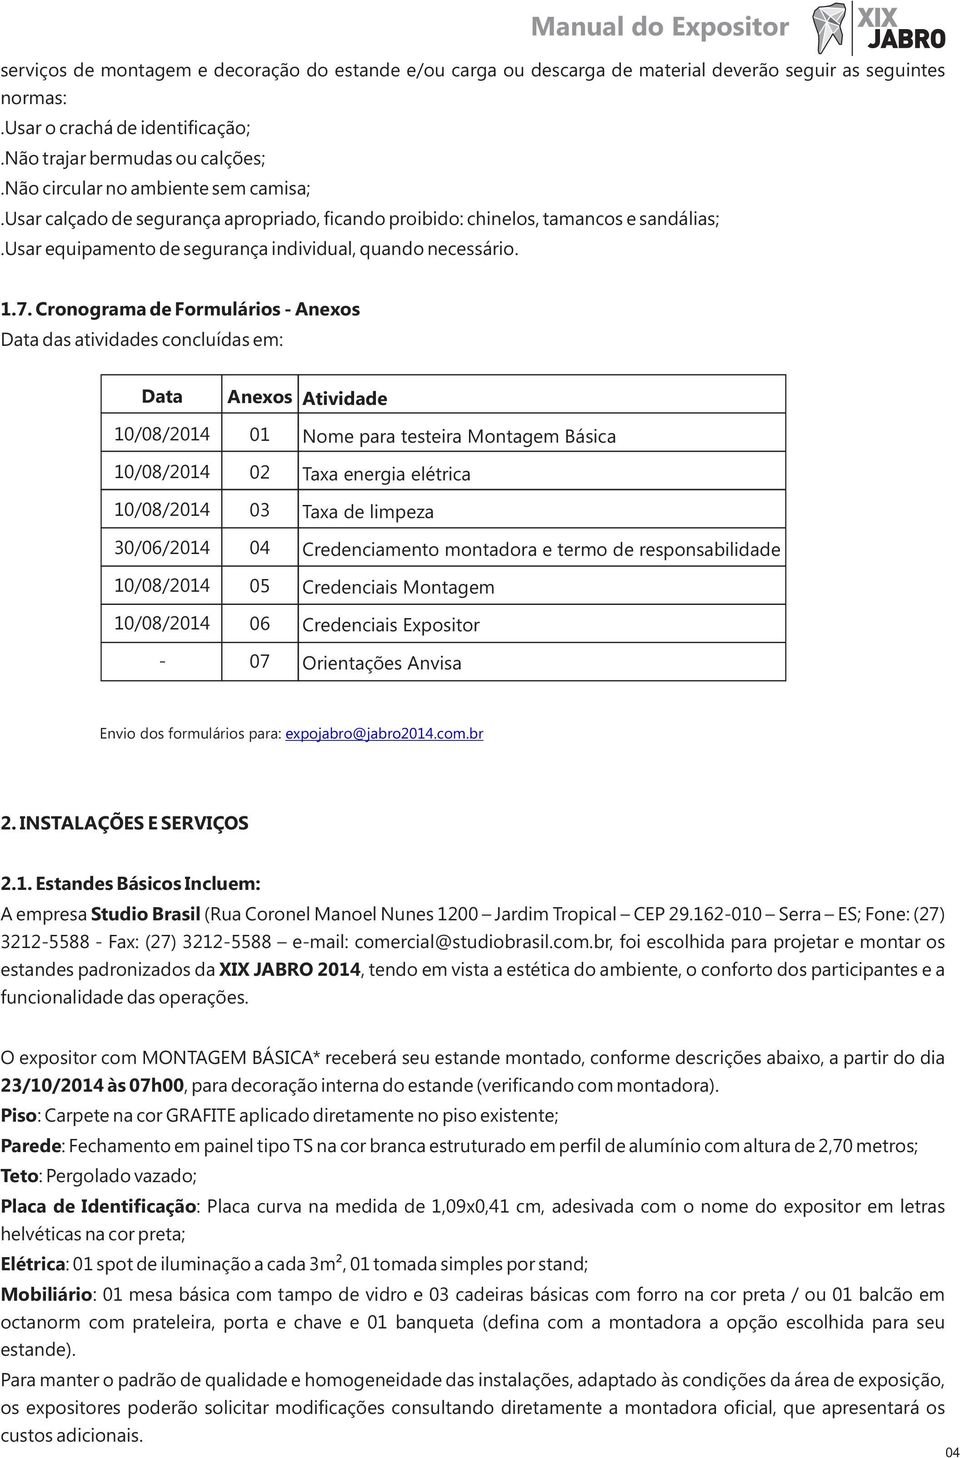 Cronograma de Formulários - Anexos Data das atividades concluídas em: Data 10/08/2014 10/08/2014 10/08/2014 30/06/2014 10/08/2014 10/08/2014 - Anexos 01 02 03 04 05 06 07 Atividade Nome para testeira